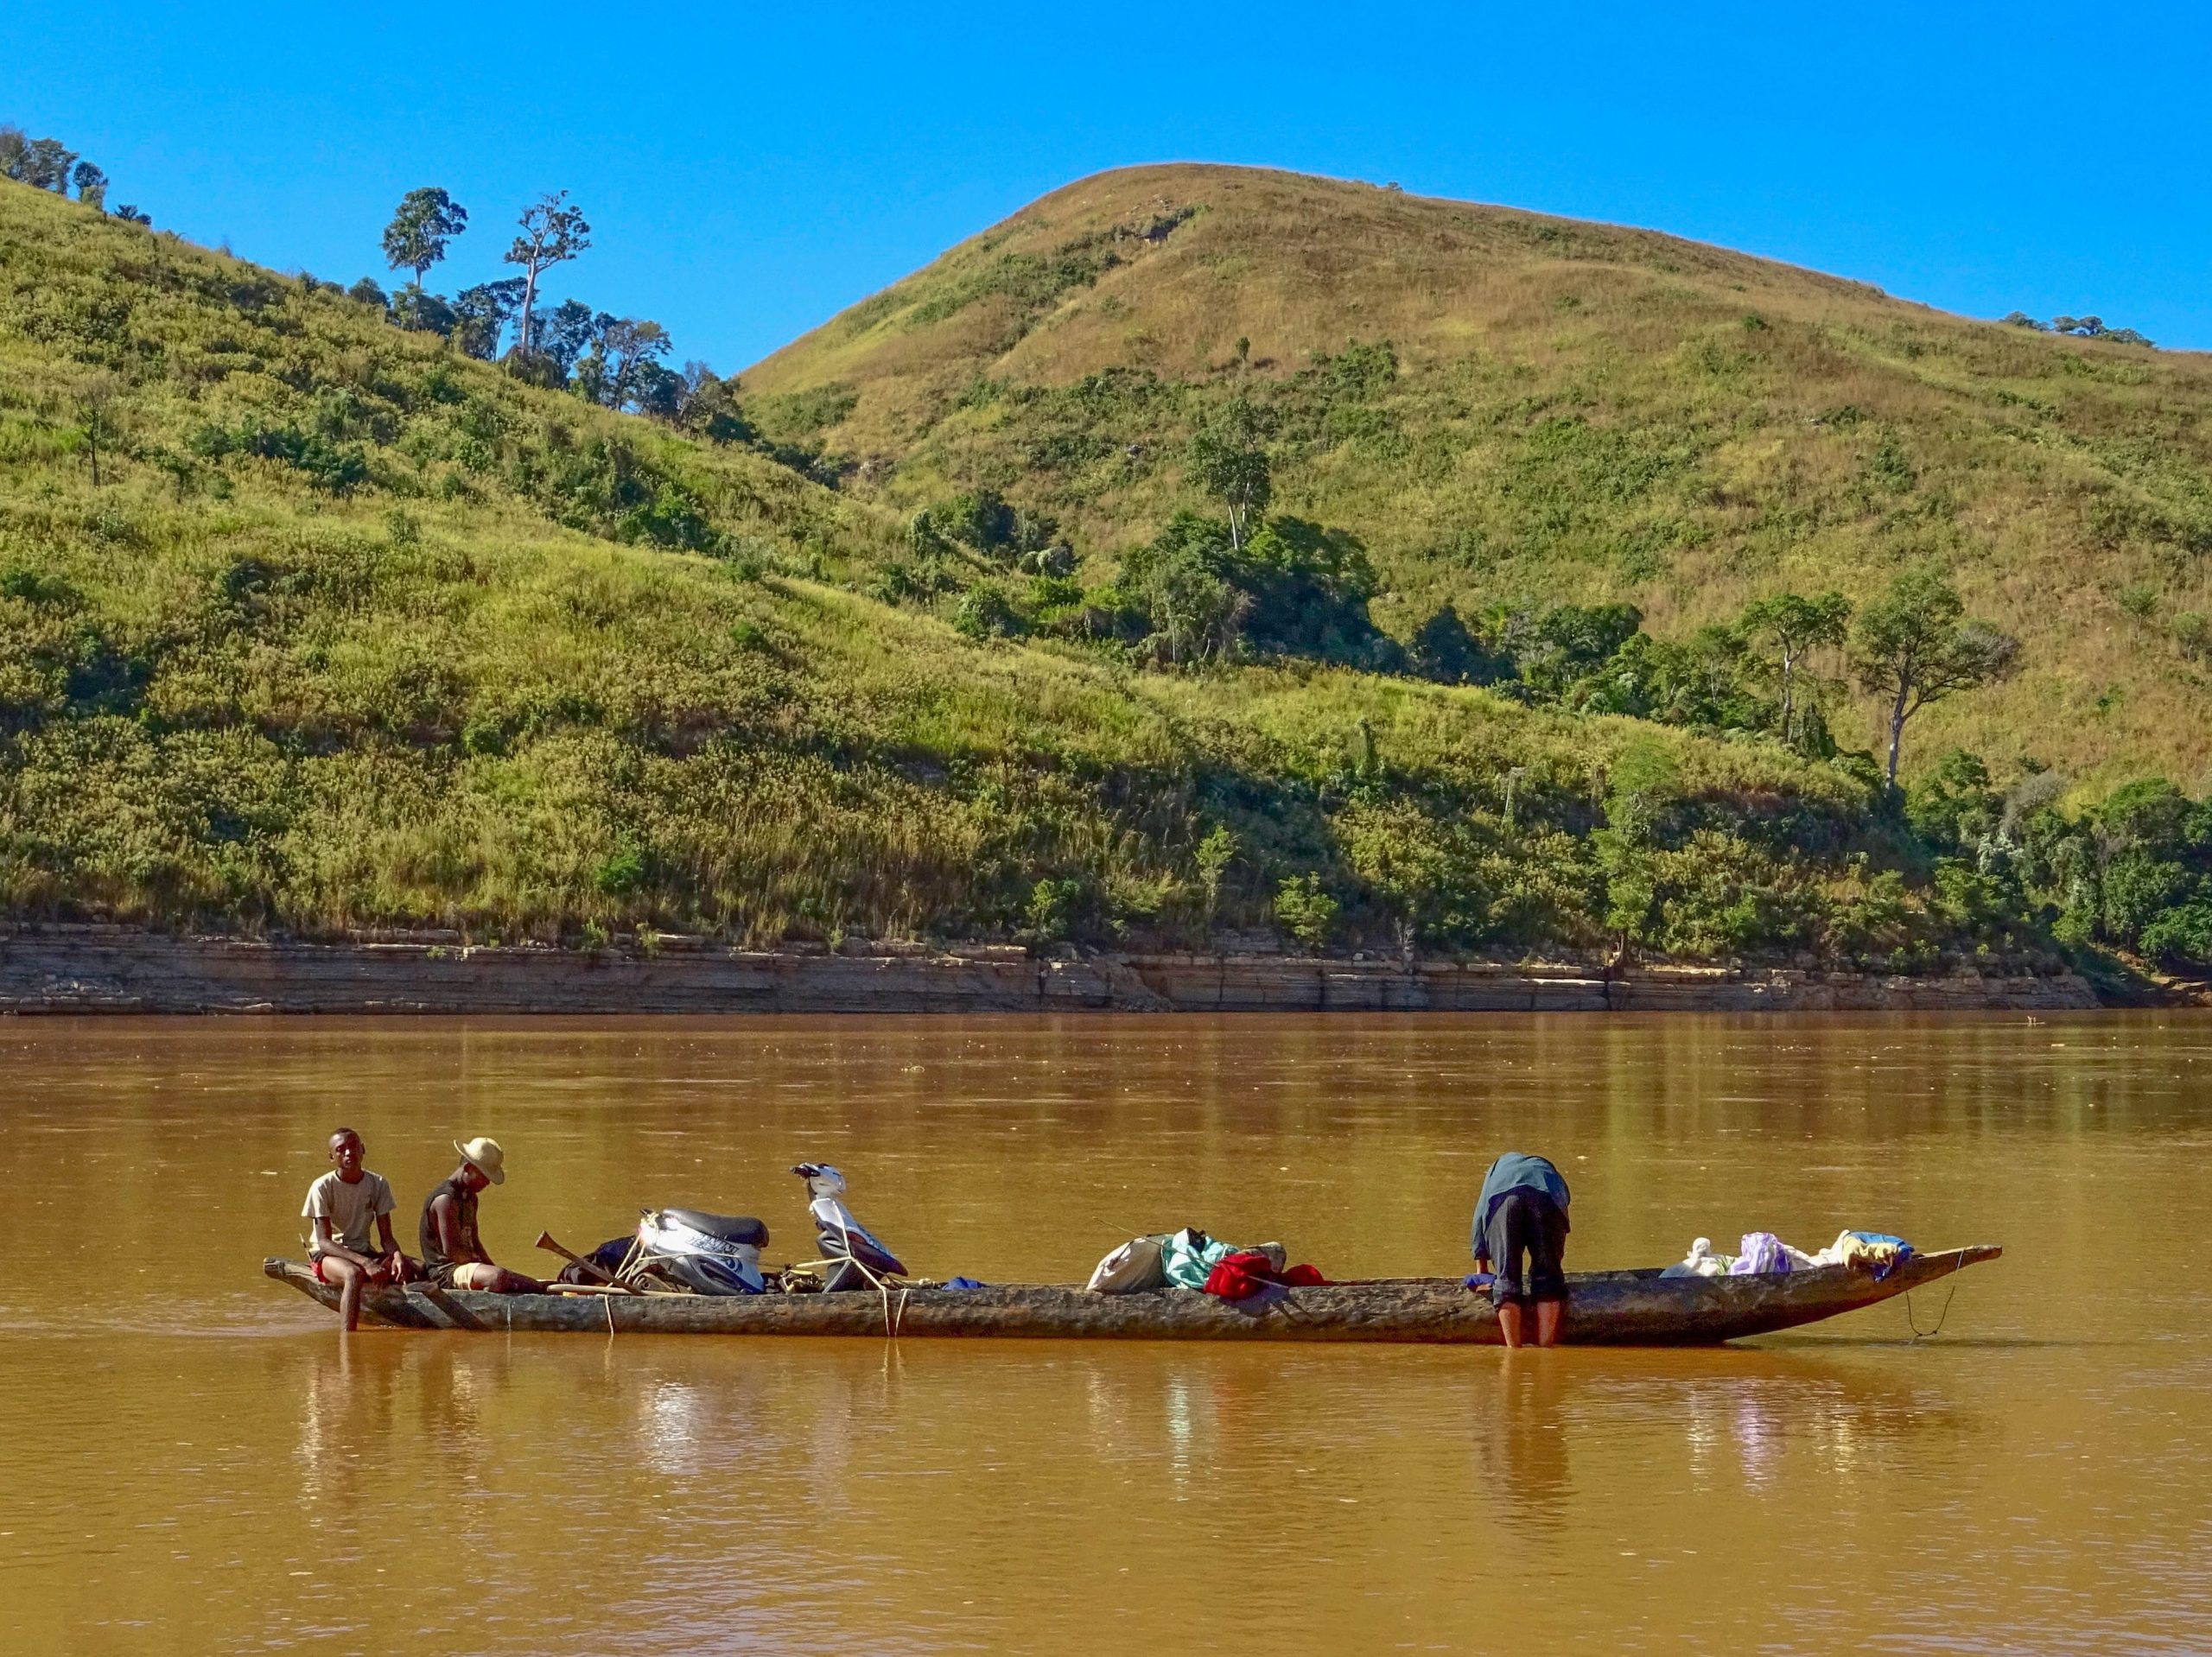 De kano loopt vast op tweede dag van de Tsiribihina riviertrip